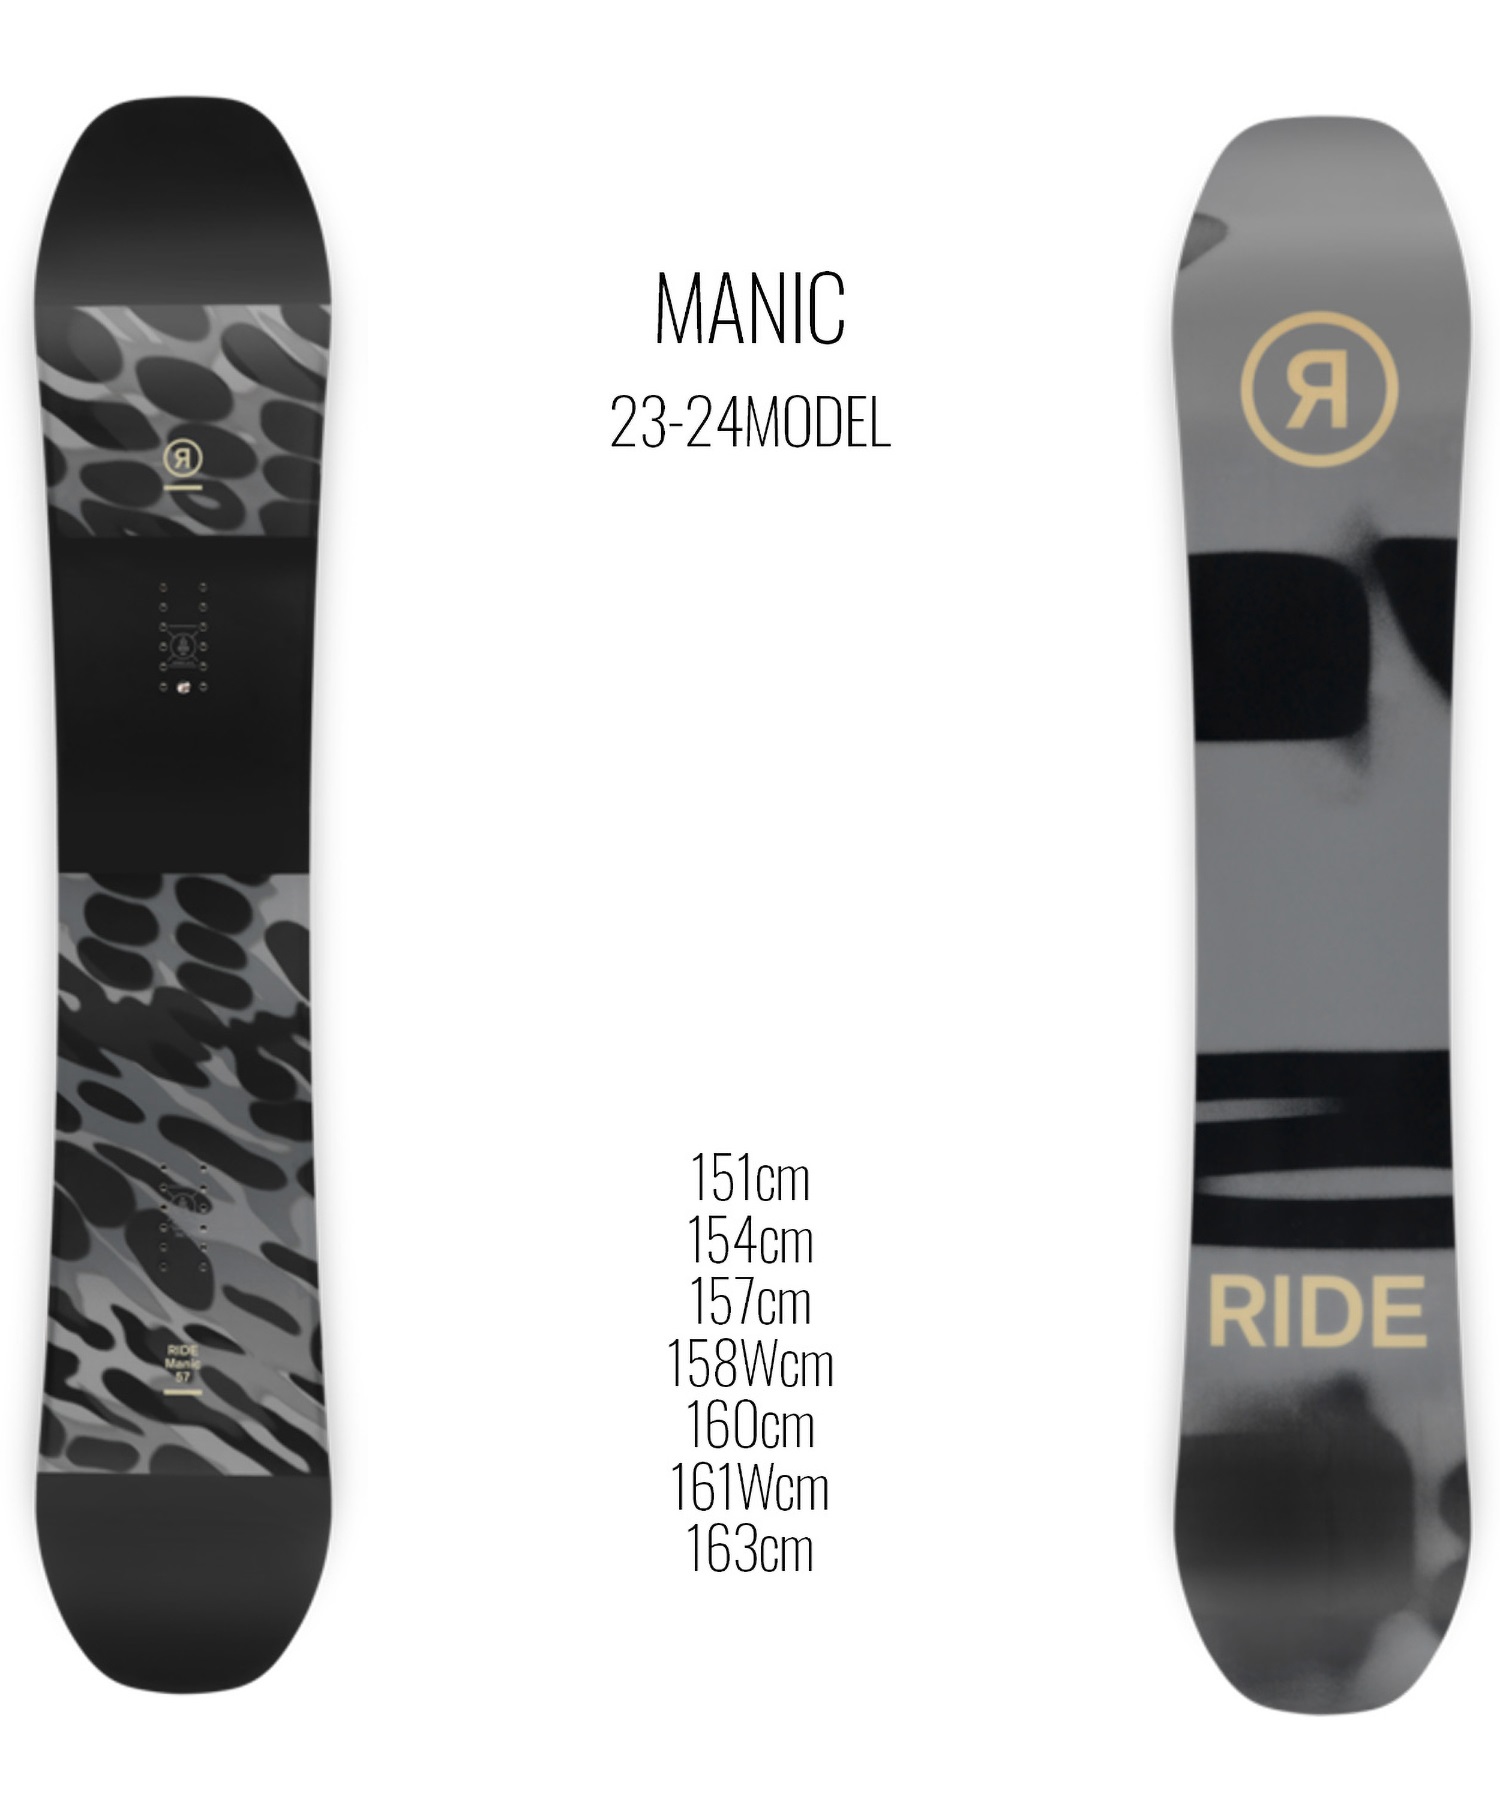 【早期購入/店頭受取対象外】スノーボード 板 メンズ RIDE ライド MANIC 23-24モデル ムラサキスポーツ KK C2(MANIC-151cm)